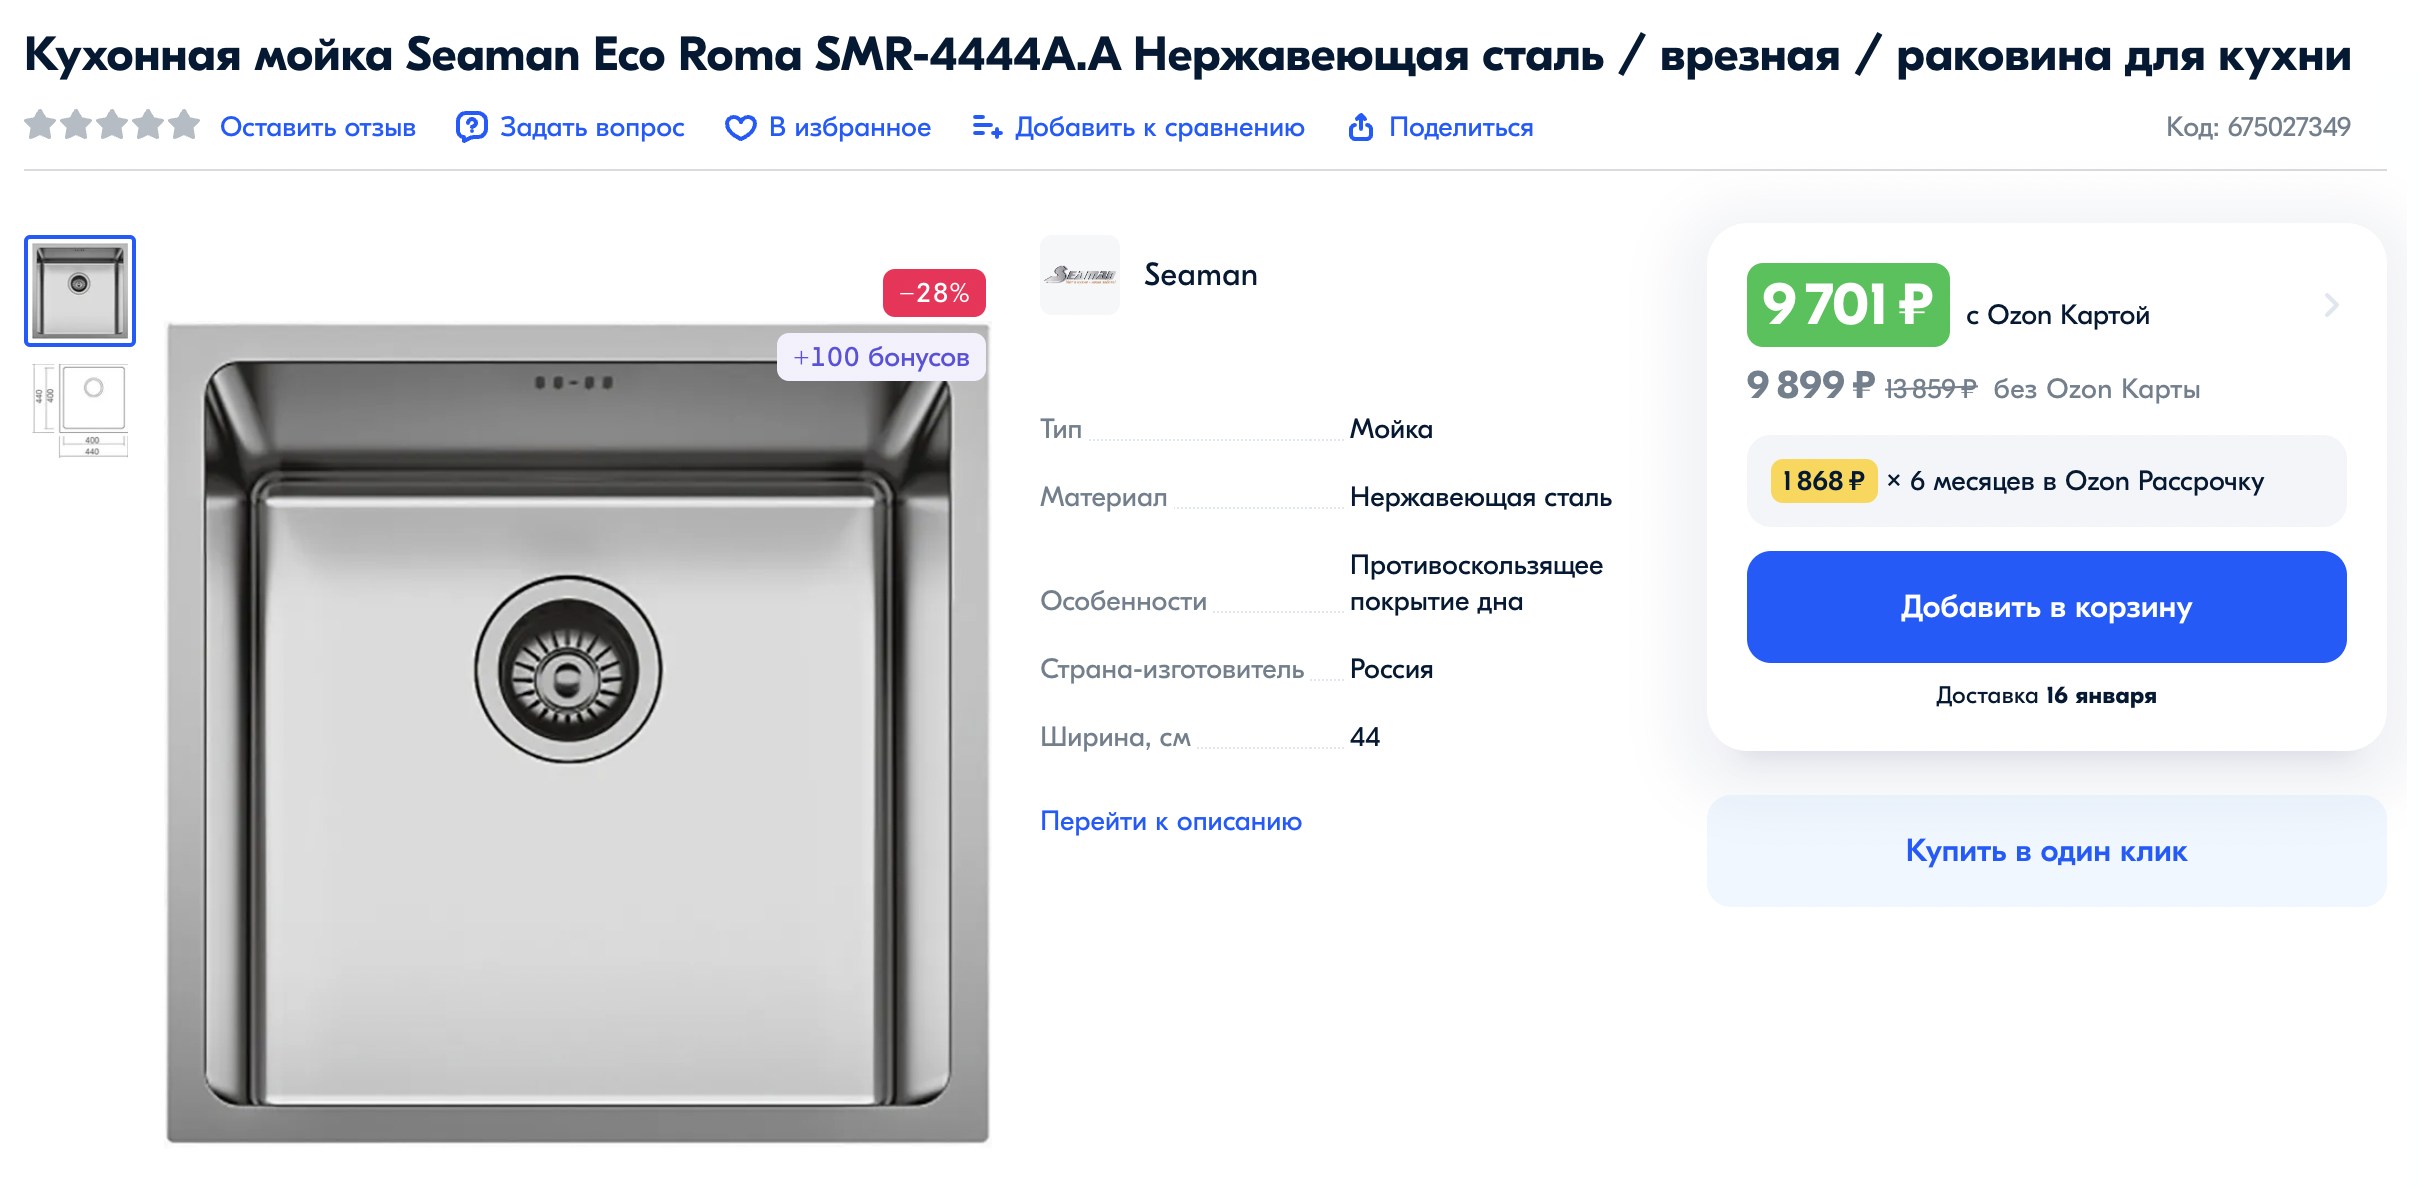 Раковина для подстольного монтажа, которую я купила на замену. Источник: ozon.ru